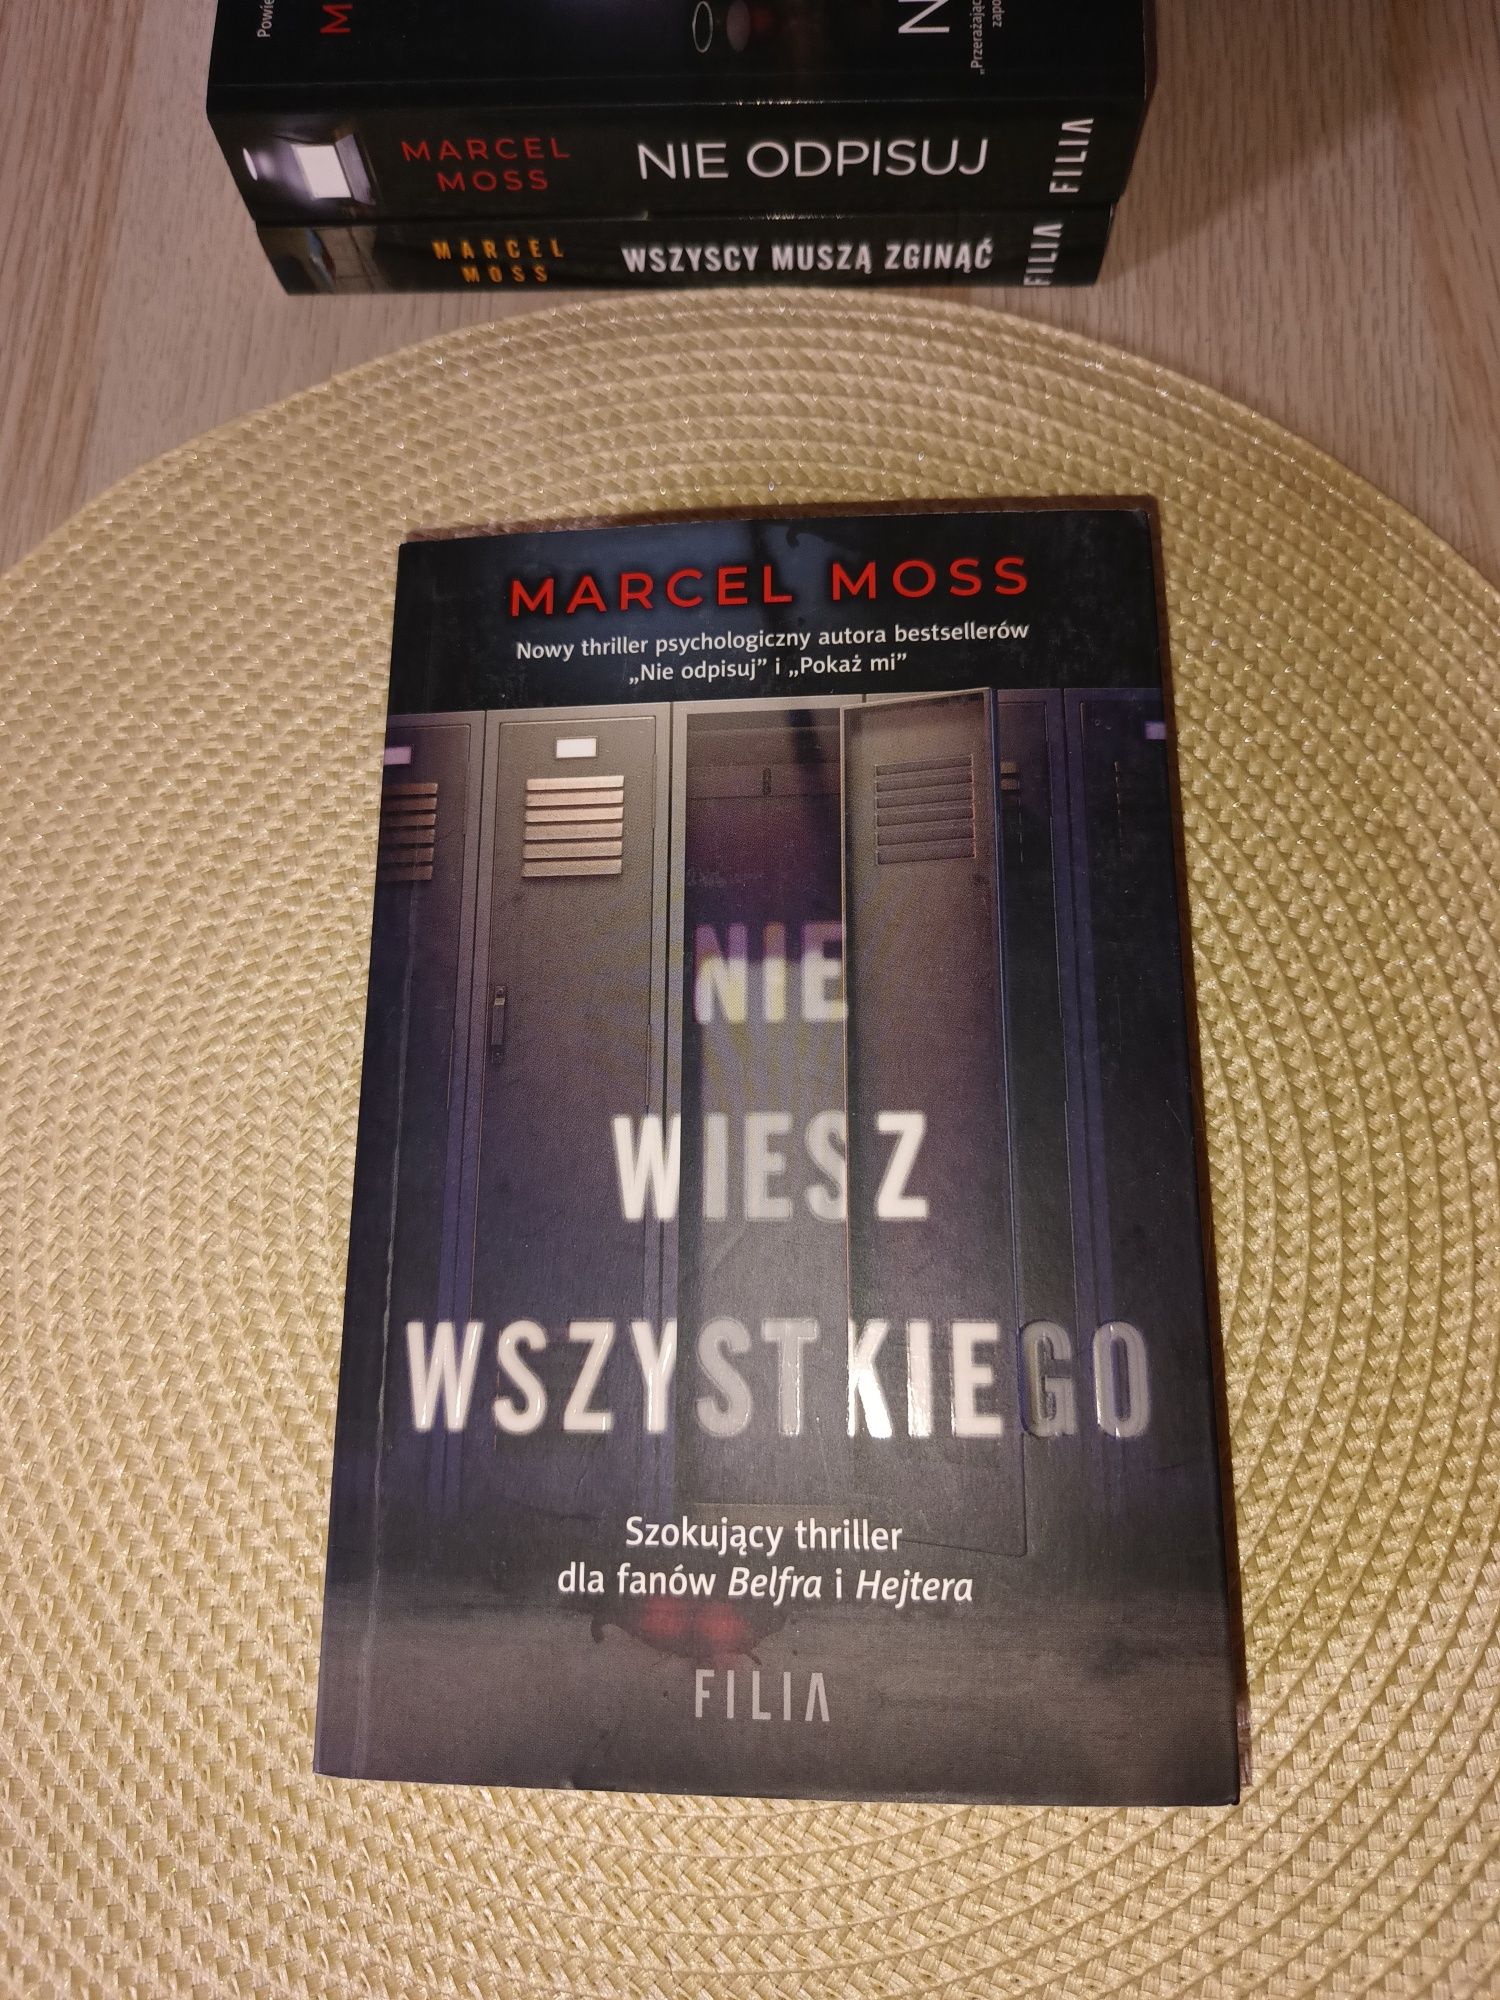 Marcel Moss, trzy książki w stanie bardzo dobrym.